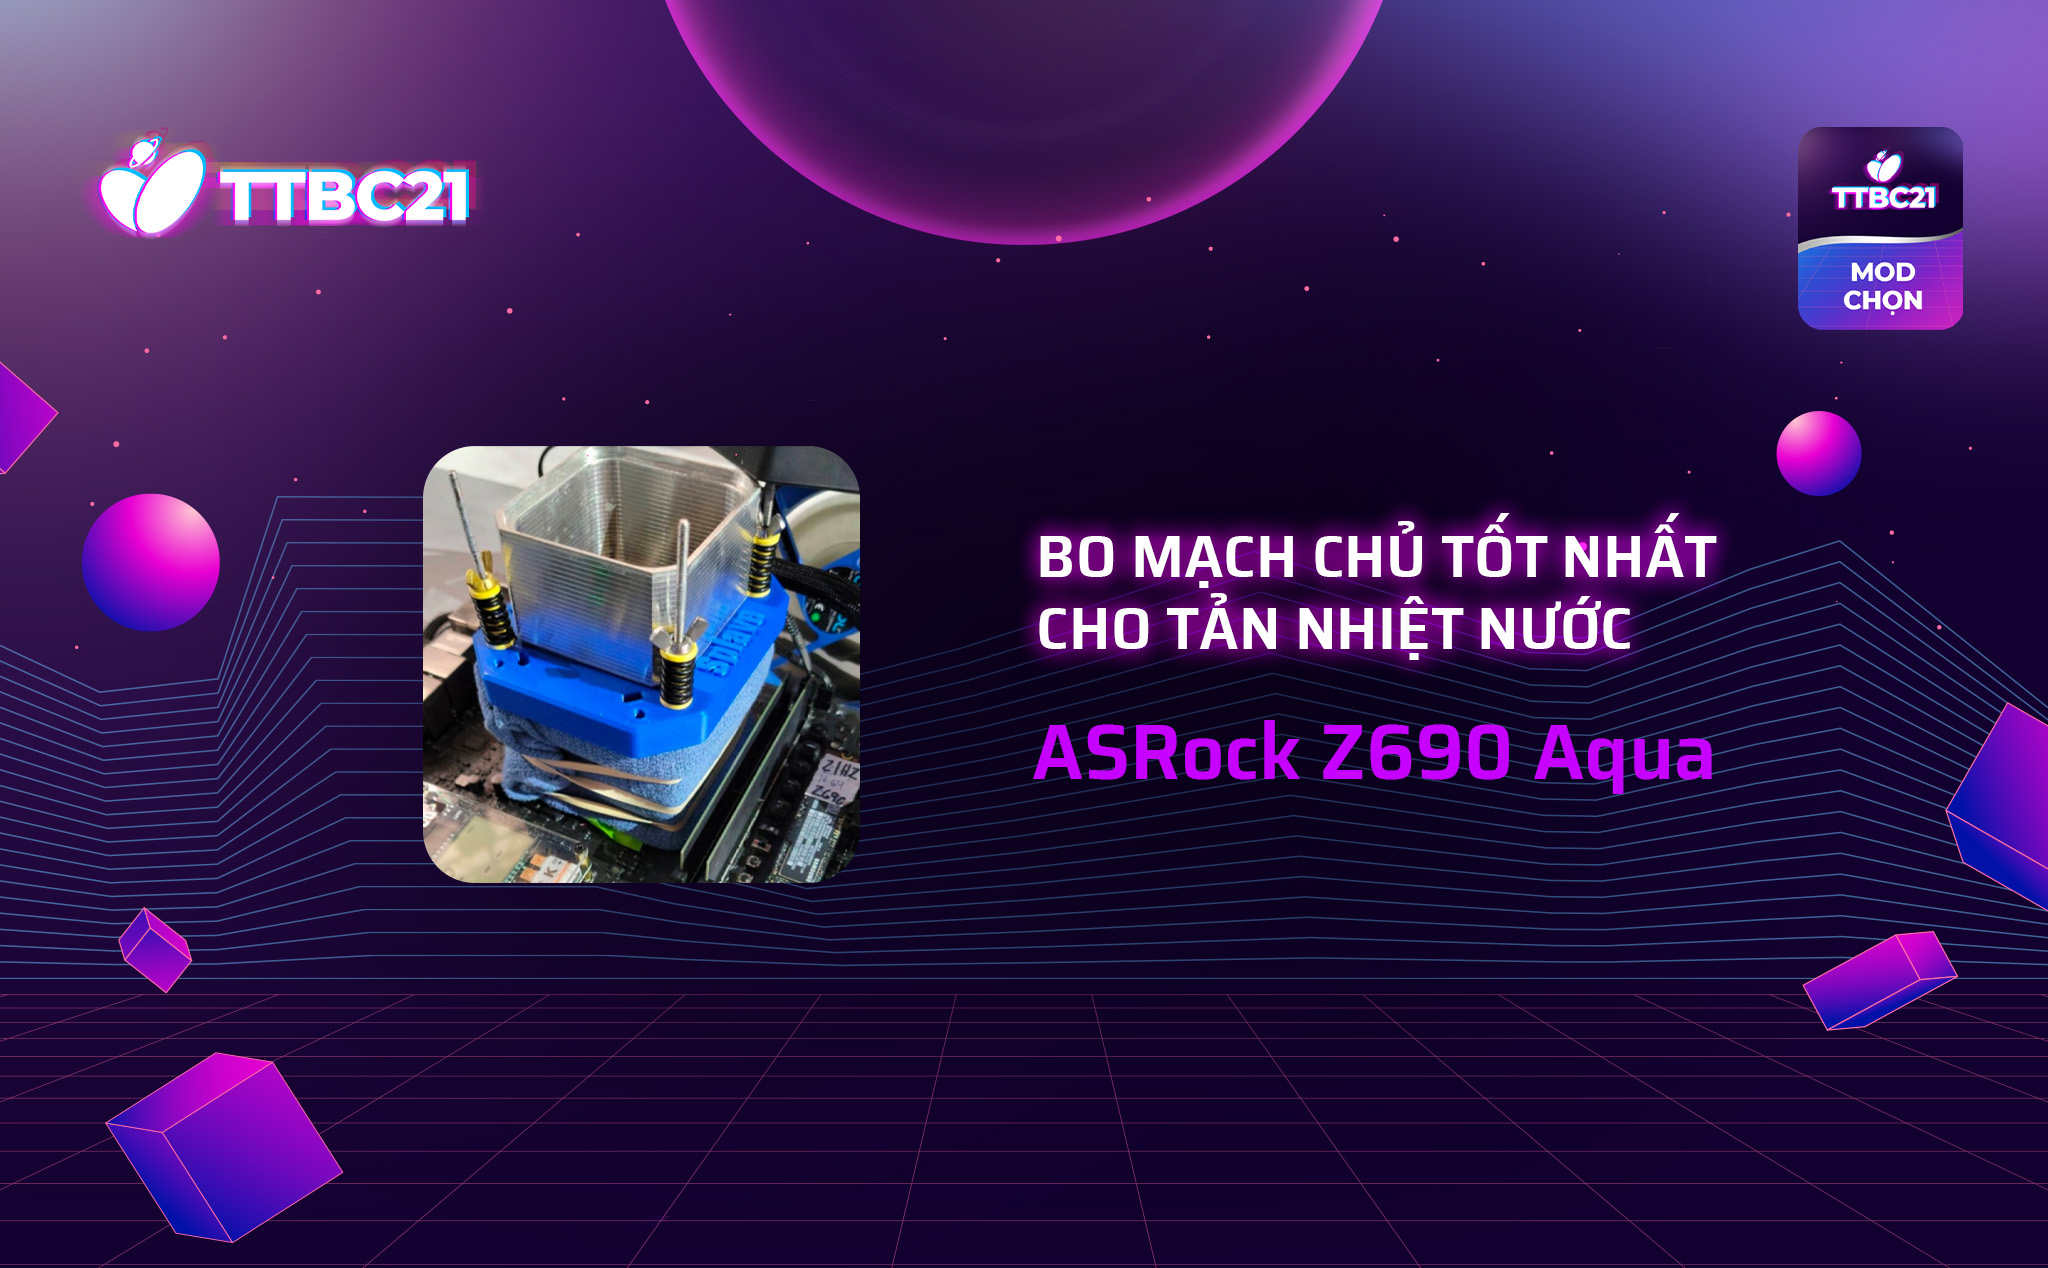 #TTBC21 – Mod Choice: ASRock Z690 Aqua, bo mạch chủ tốt nhất cho tản nhiệt nước